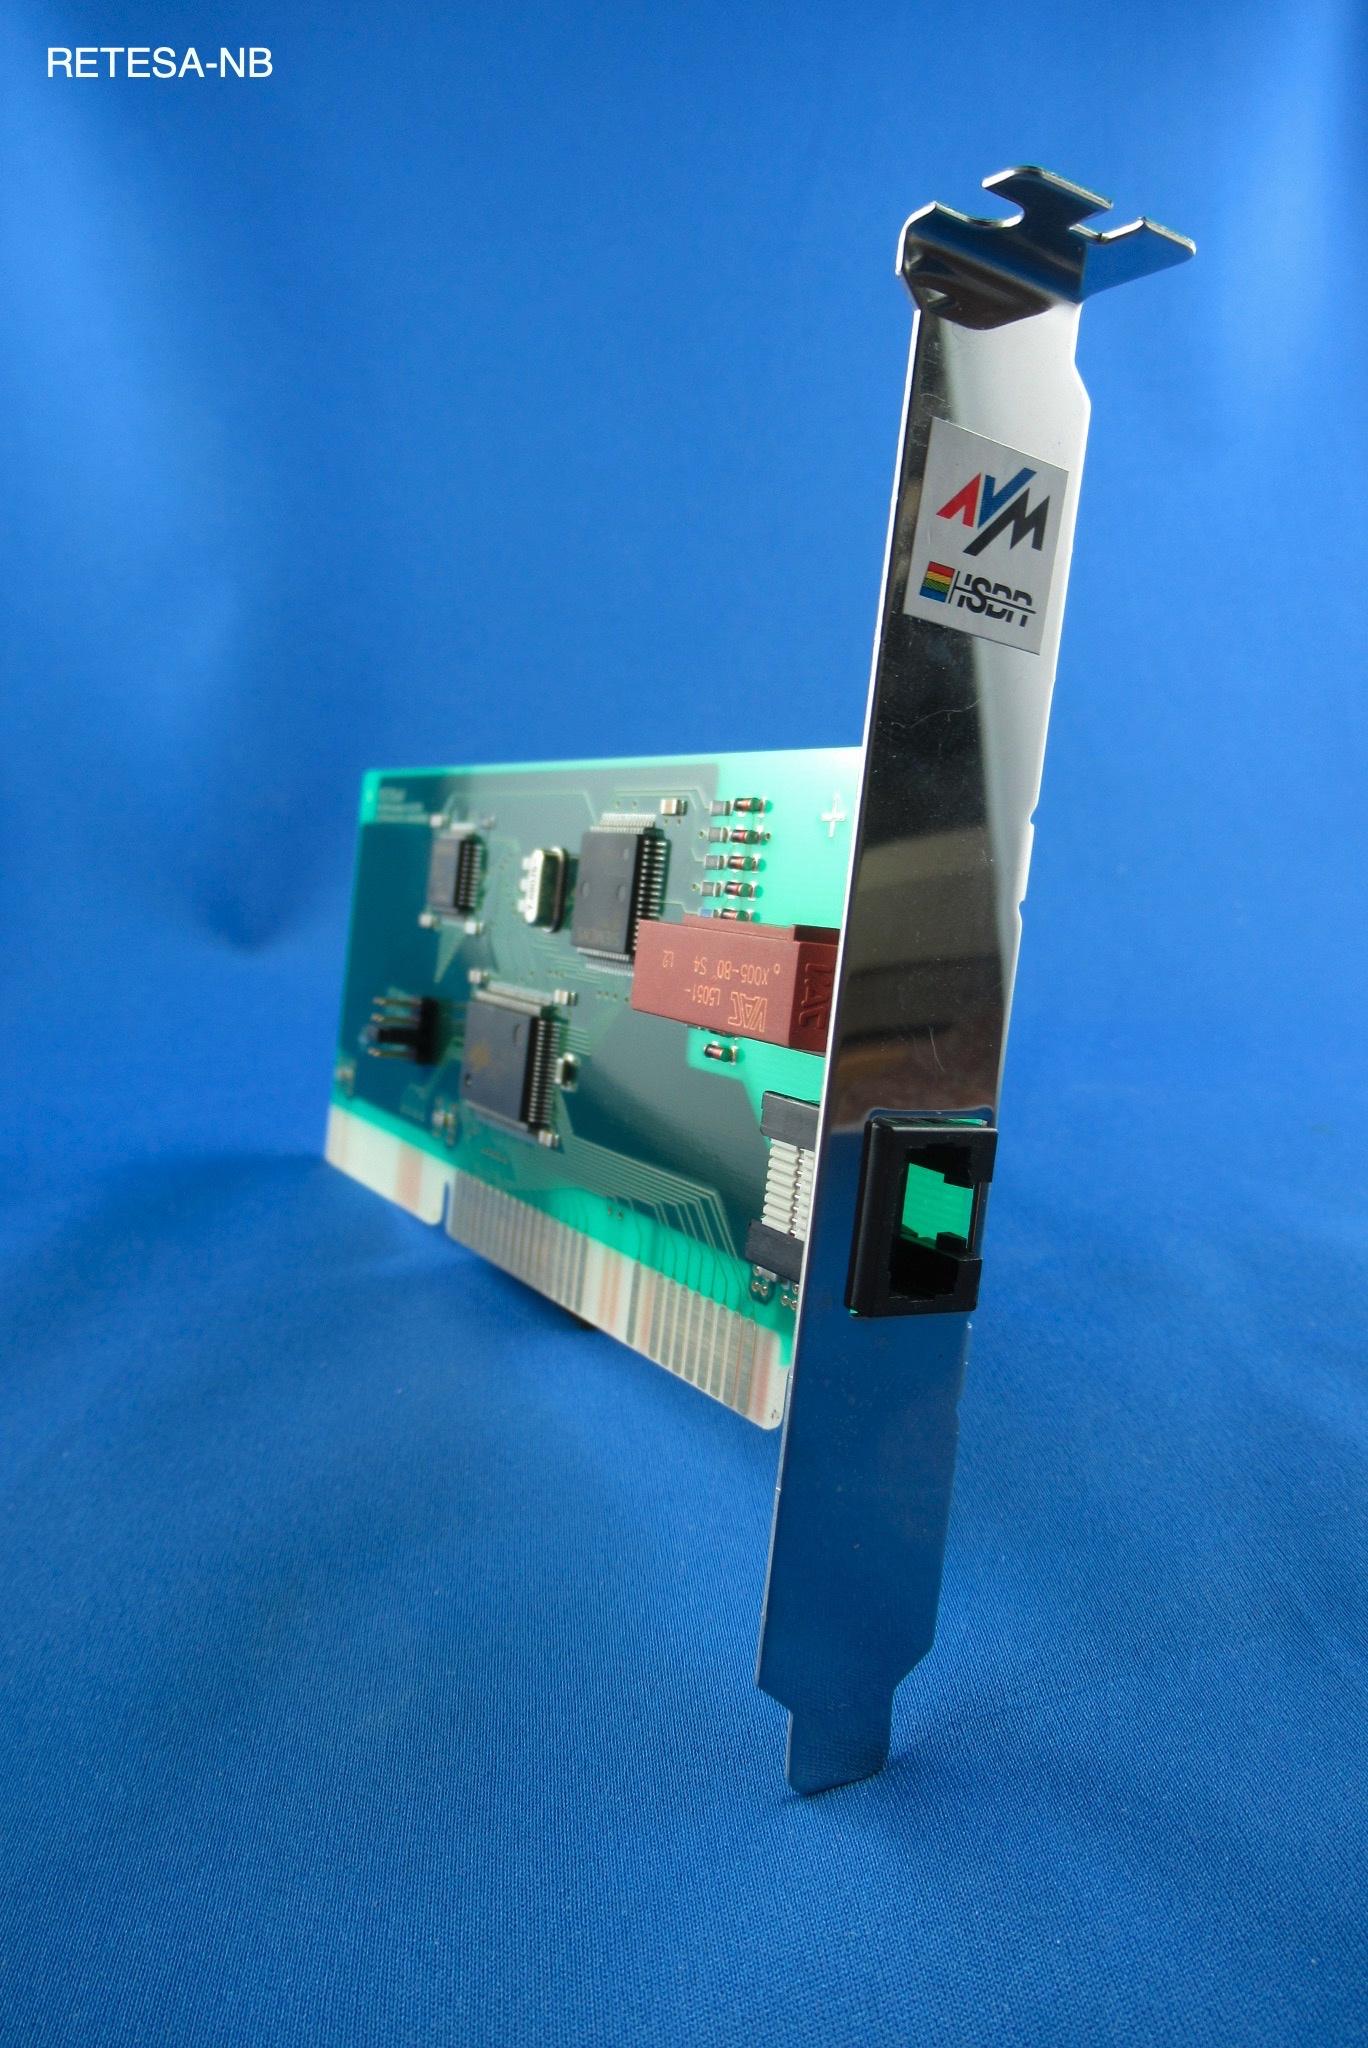 ISDN-Controller AVM FRITZ!Card Classic AVM 20001423